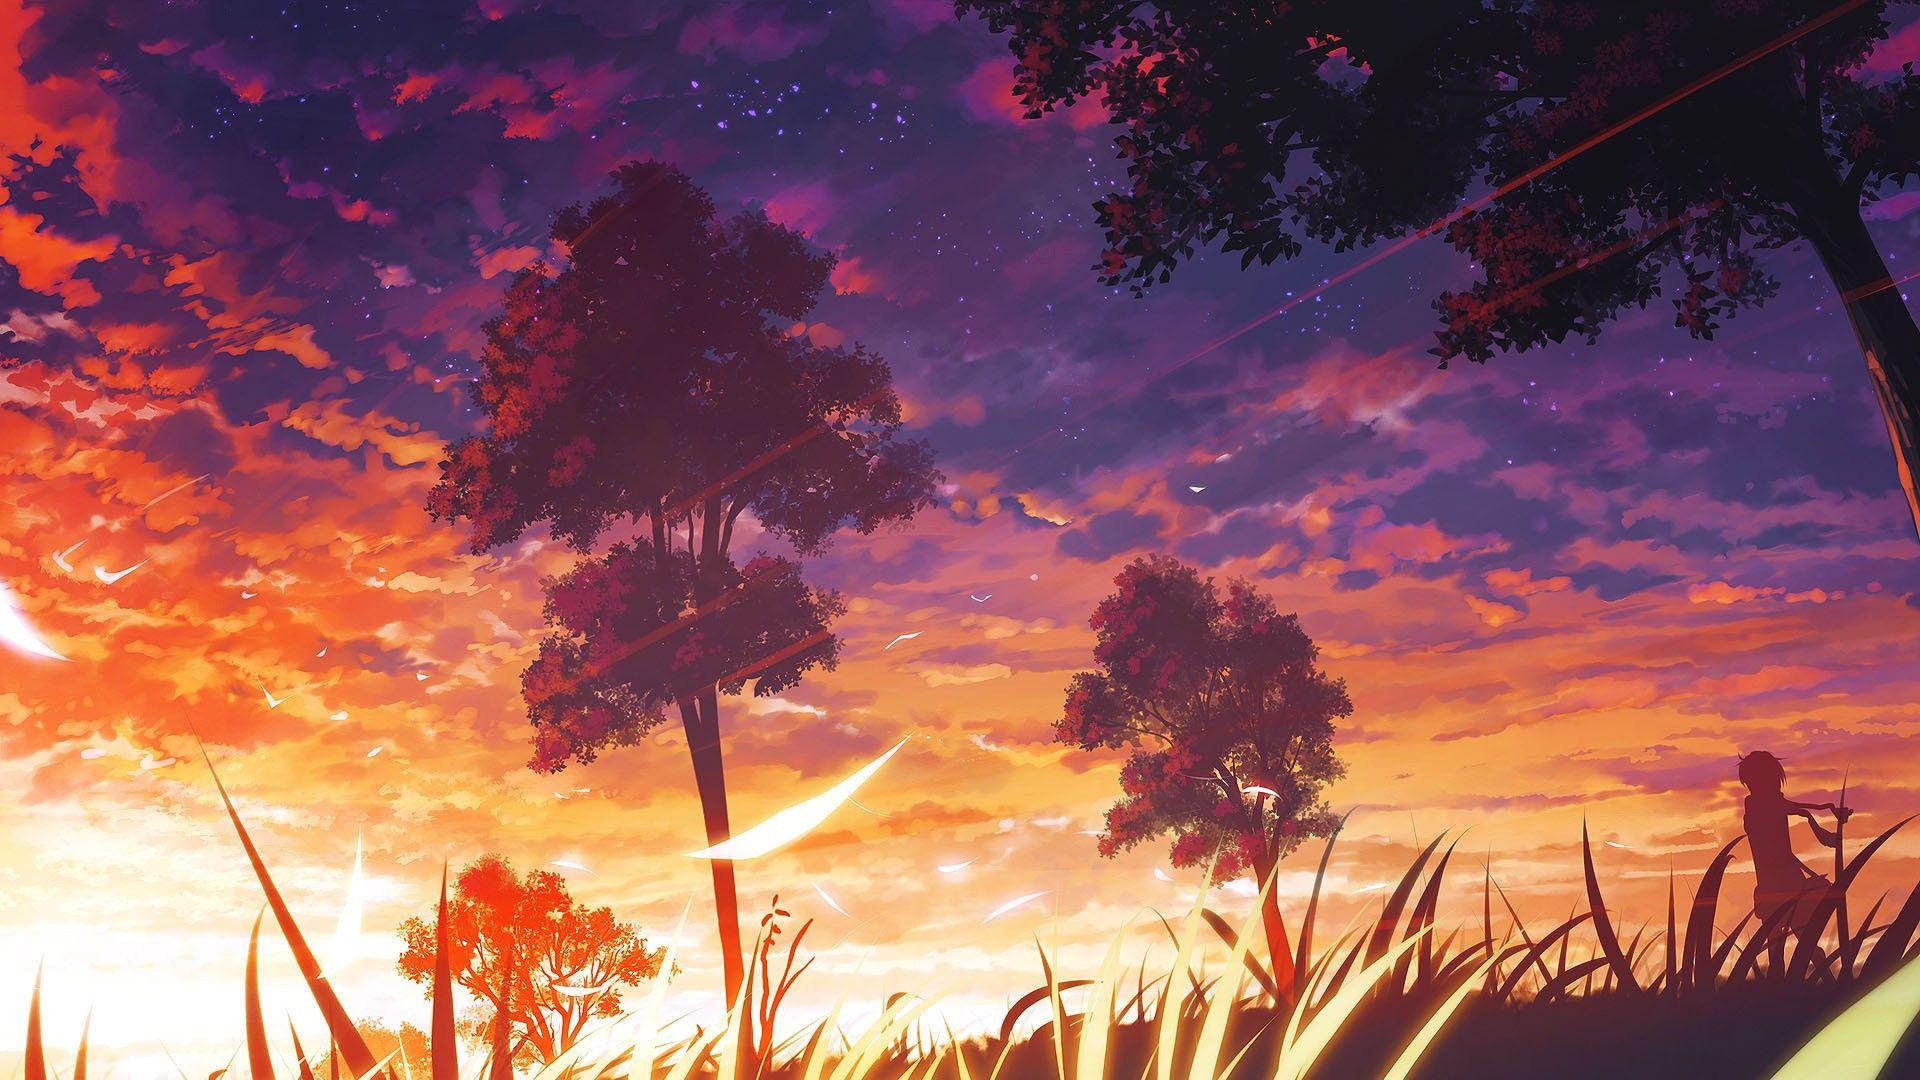 Sunset Anime Wallpaper [1920x1080] • R Wallpaper. Anime Scenery Wallpaper, Anime Scenery, Scenery Wallpaper